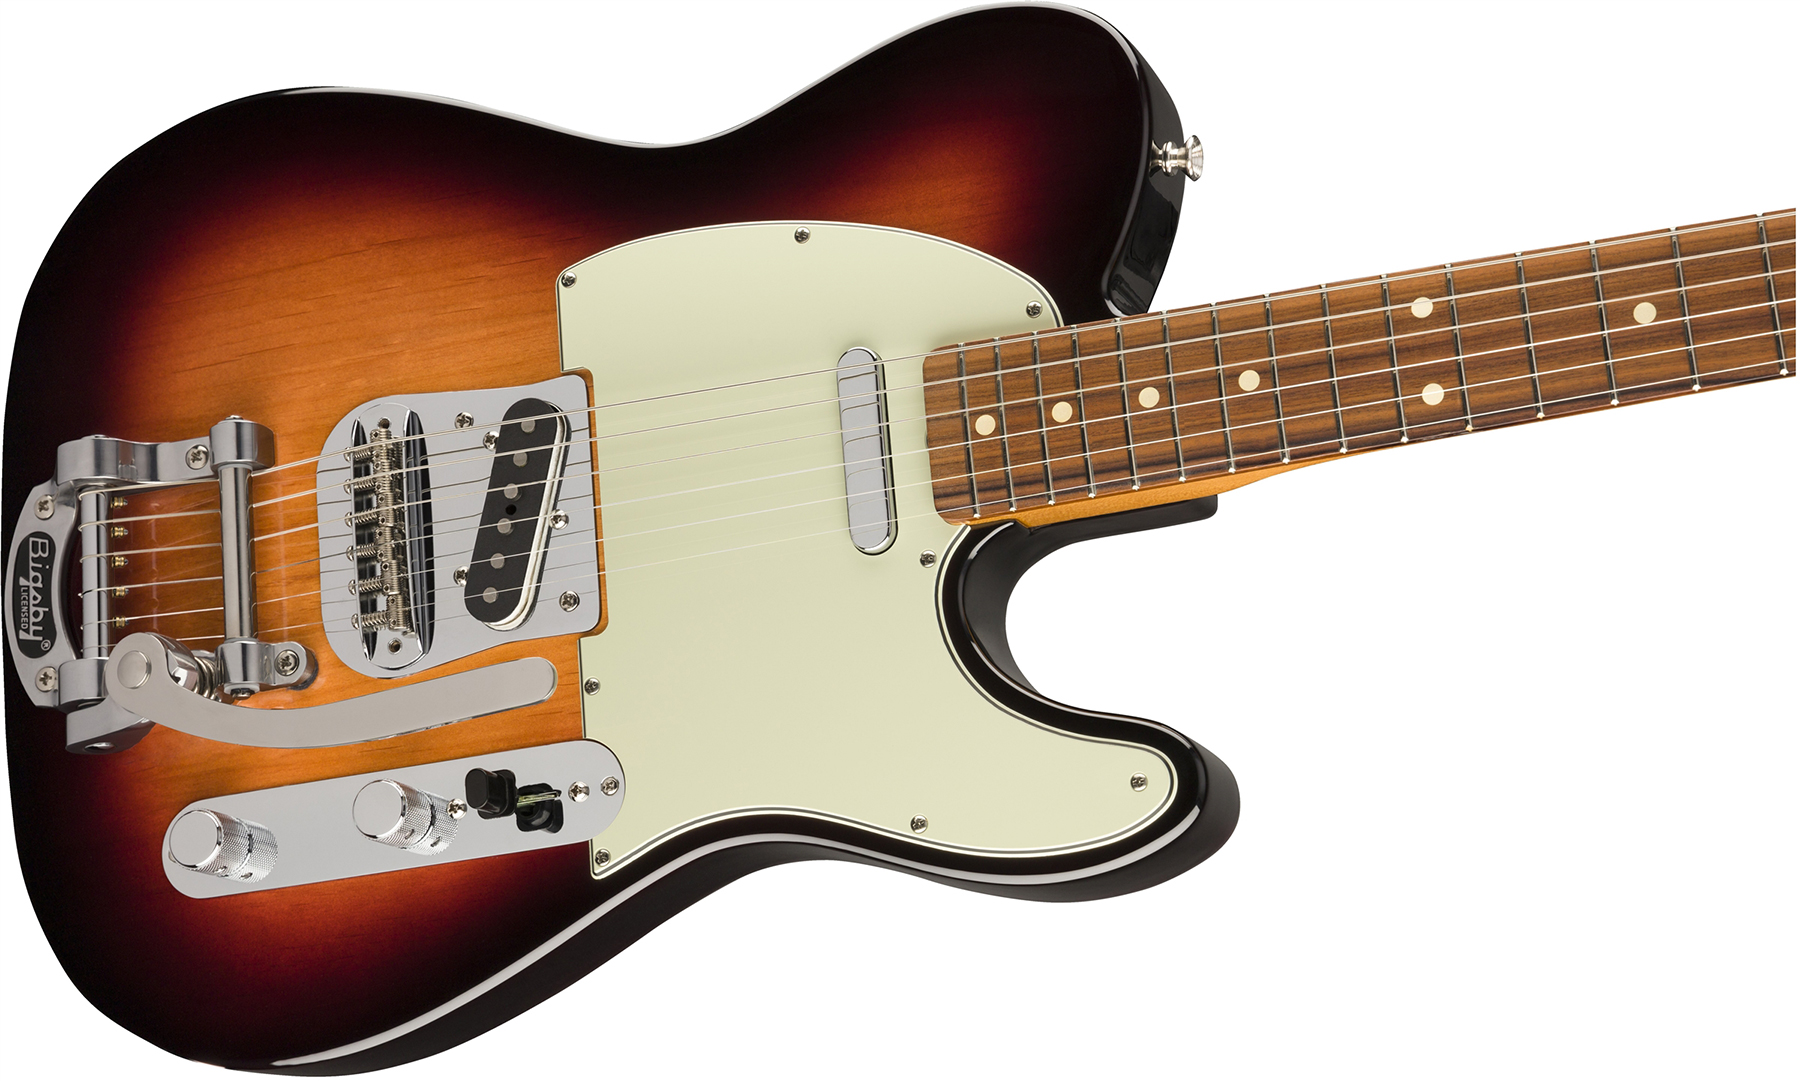 Fender Tele 60s Bigsby Vintera Vintage Mex Pf - 3-color Sunburst - Guitarra eléctrica con forma de tel - Variation 2